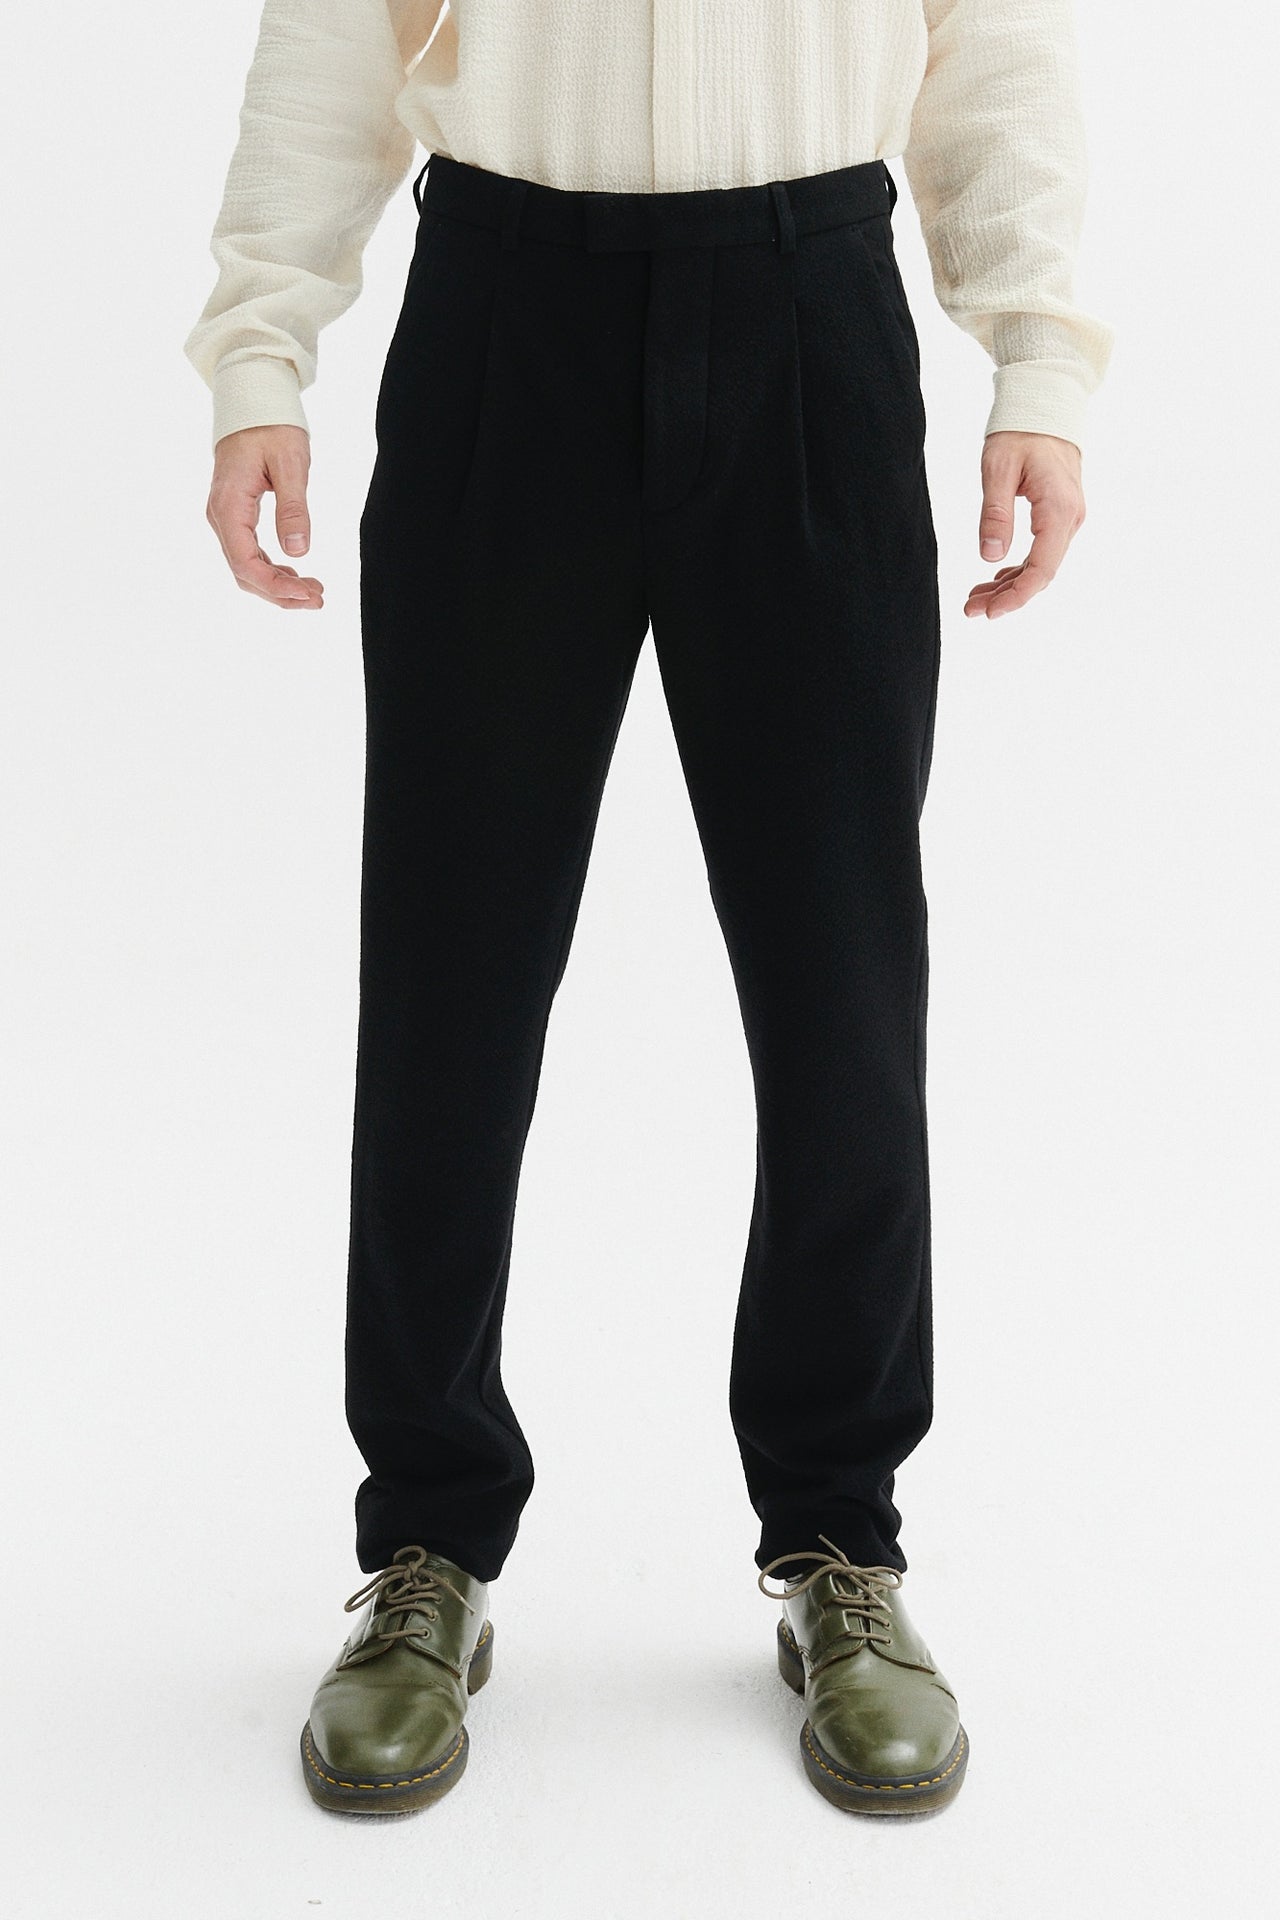 Bohemian Trousers in a Black Italian Virgin Wool and Cotton Seersucker